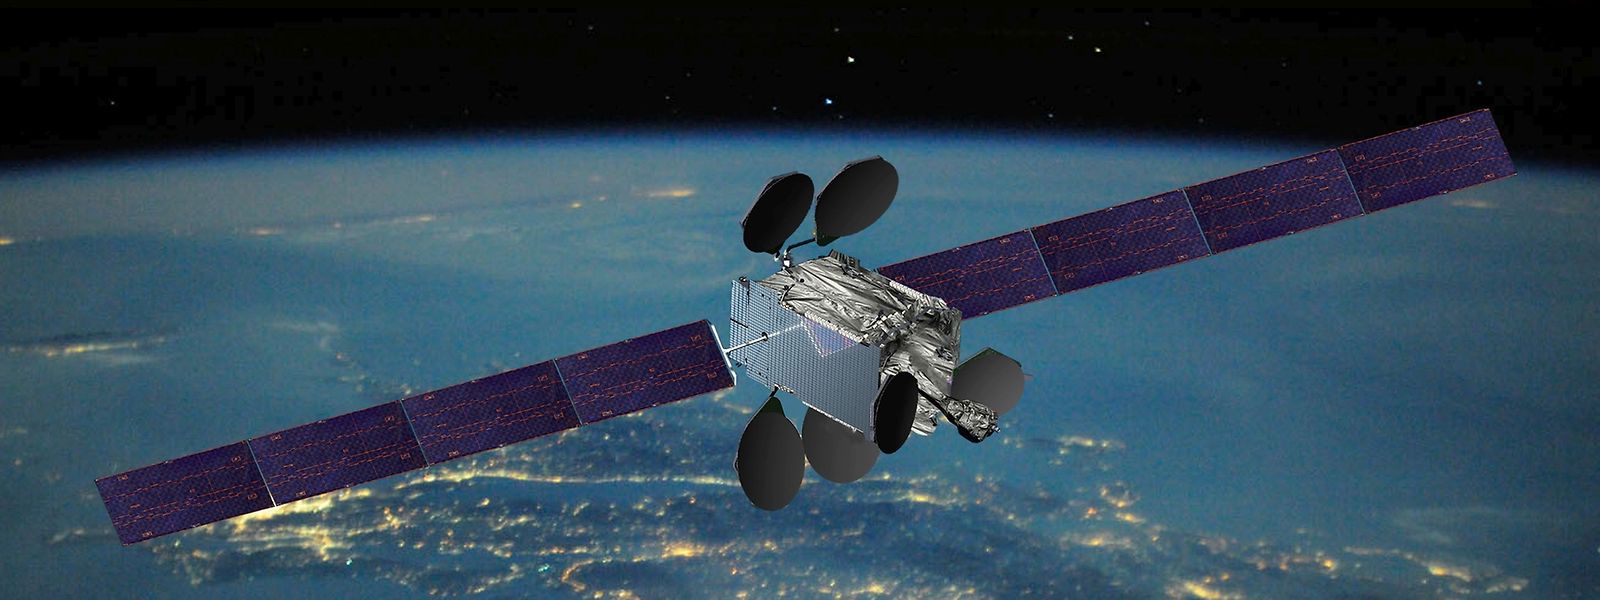 Für den Satellitenbetreiber Intelsat geht es finanziell endlich wieder aufwärts.  